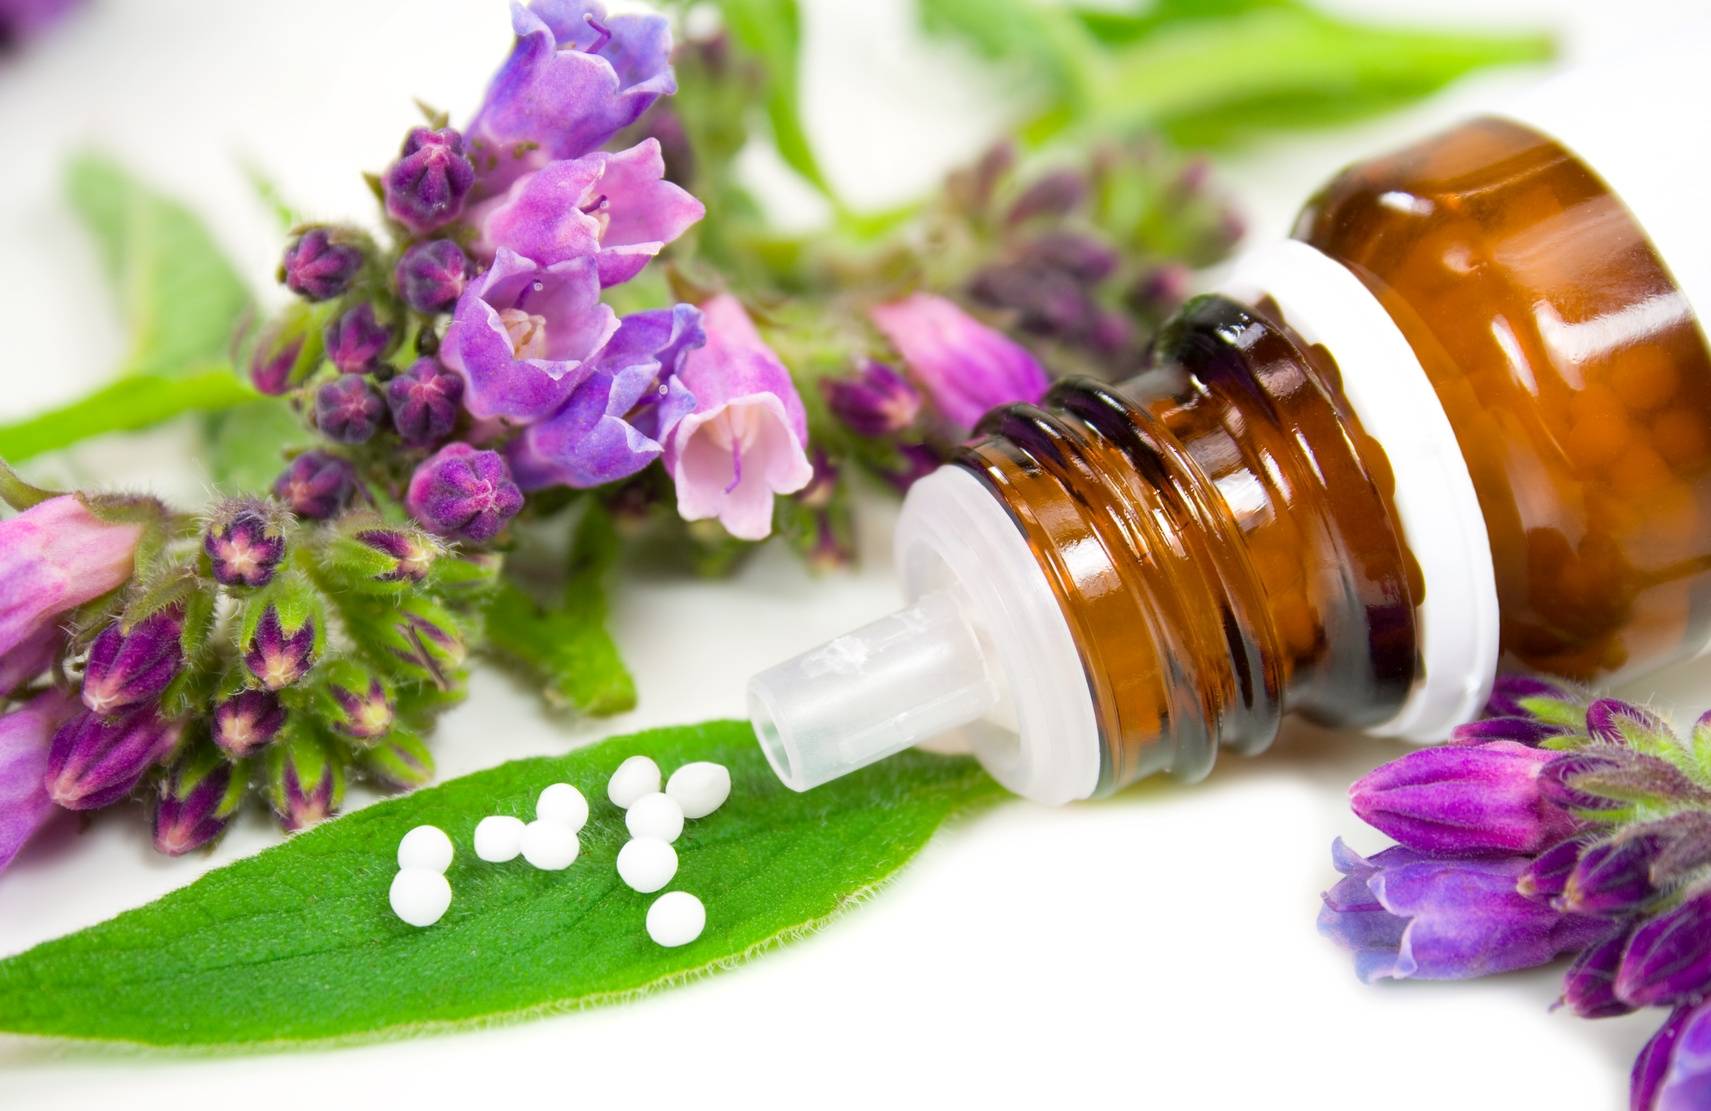 Homeopatia, lek homeopatyczny Ignatia amara - dla kogo i na co pomaga? Fiolka leku homeopatycznego w otoczeniu fioletowych kwiatów i zielonych liści.